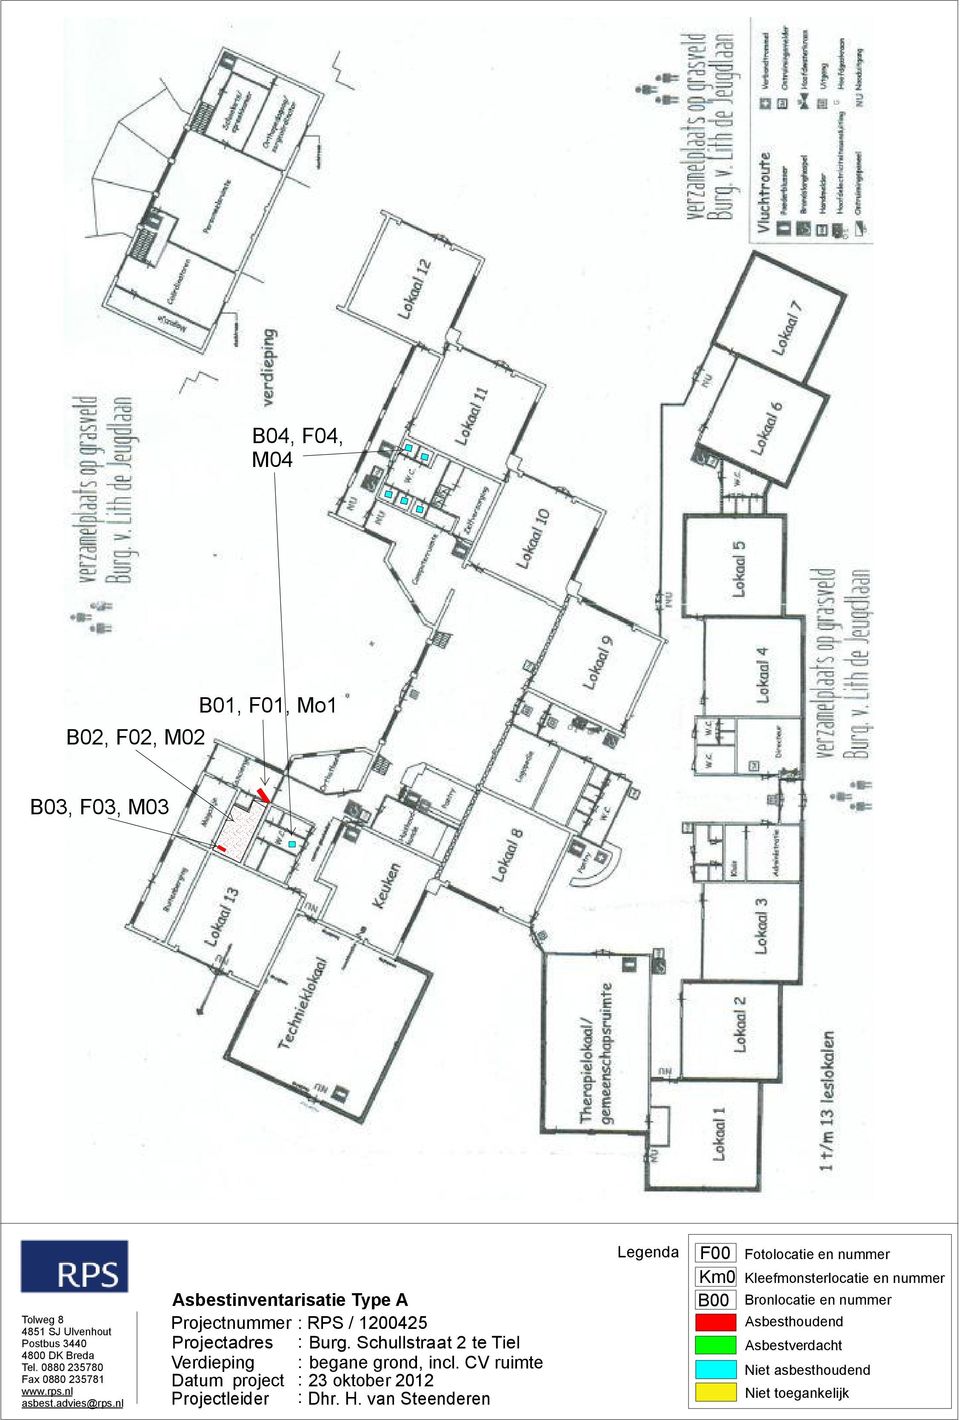 Schullstraat 2 te Tiel Verdieping : begane grond, incl. CV ruimte Datum project : 23 oktober 2012 Projectleider : Dhr. H.